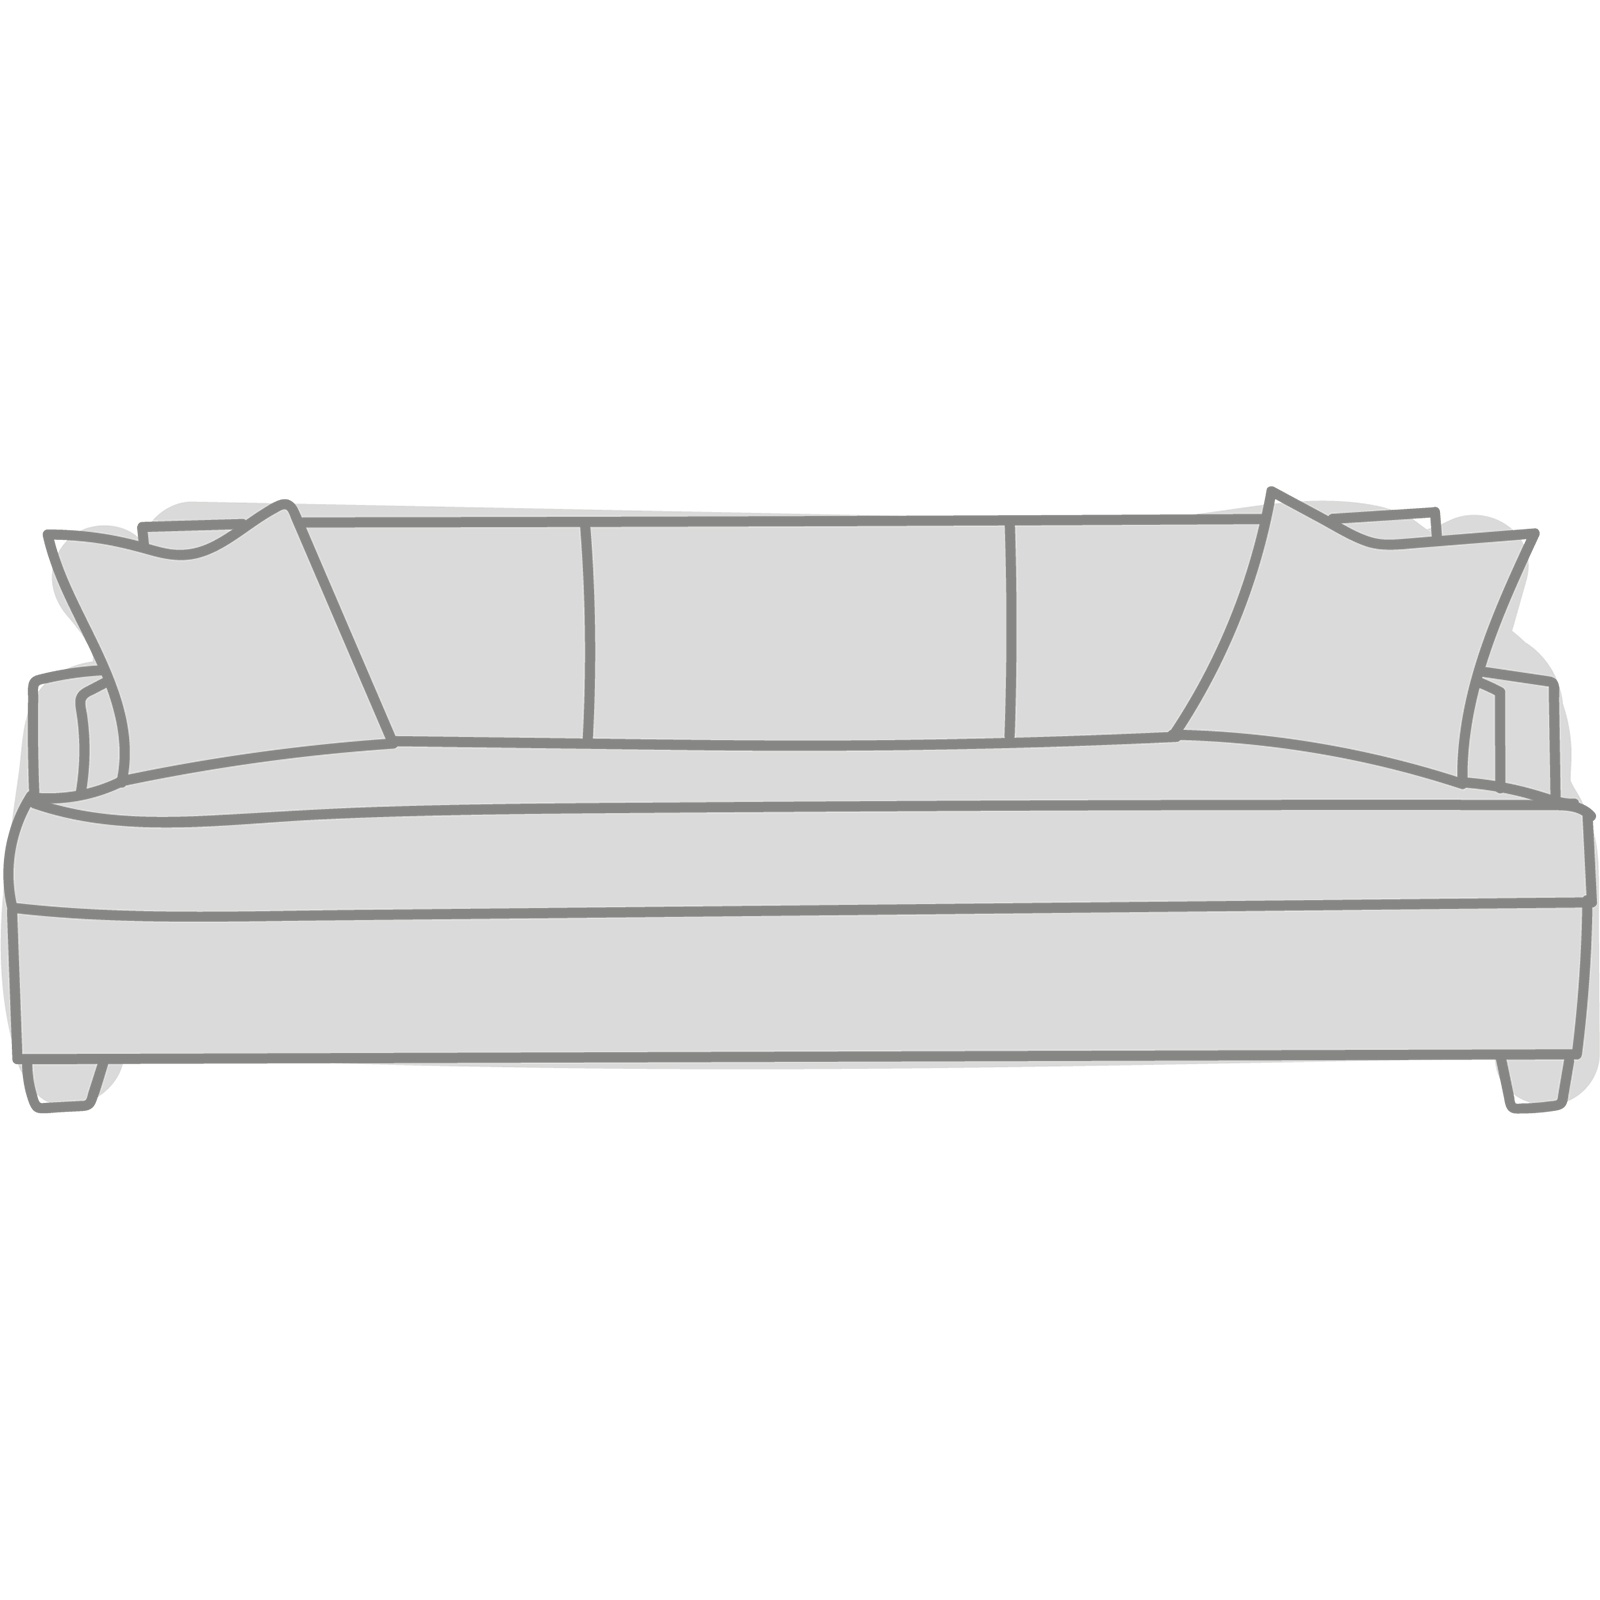 Laney 92" Bench Sofa